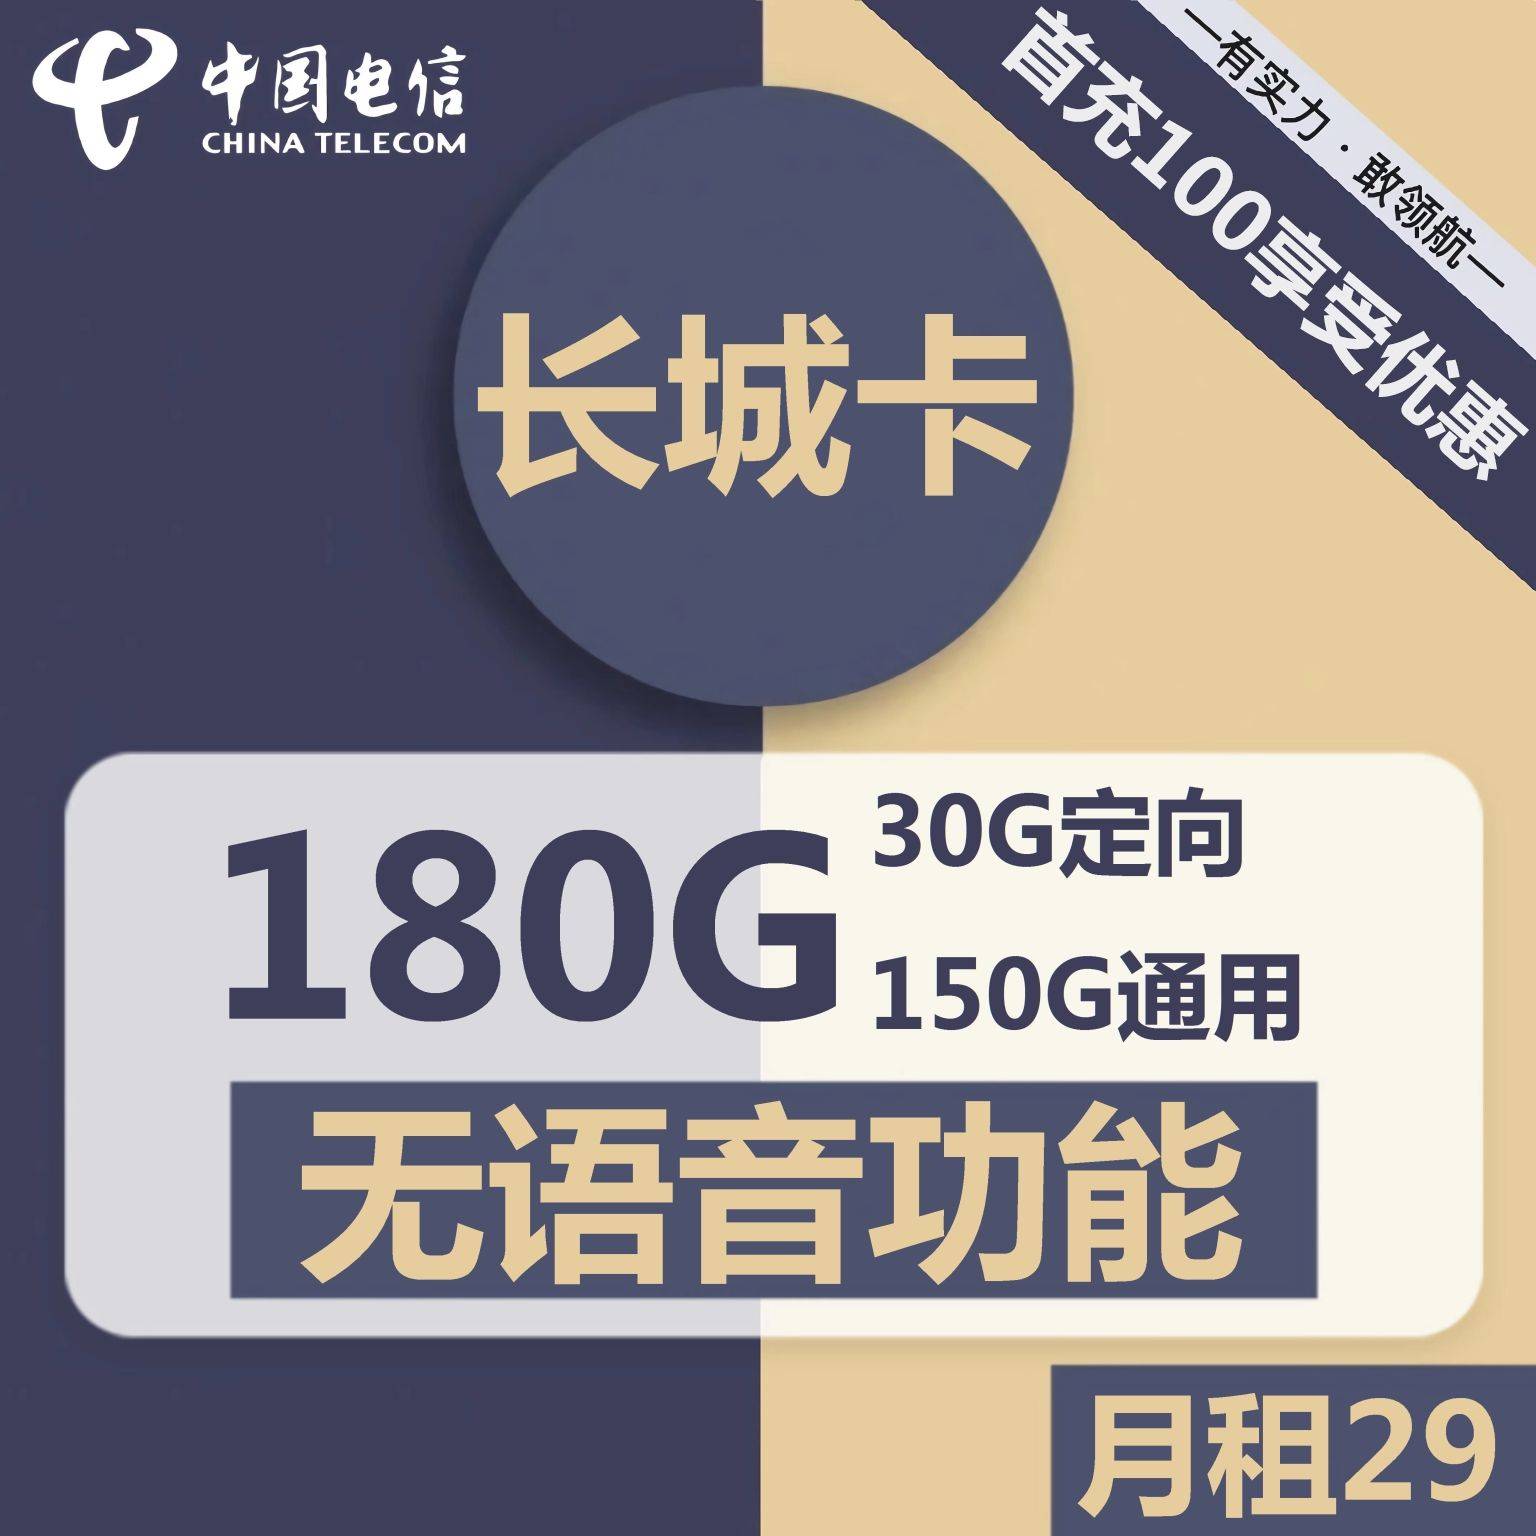 北京电信长城卡29元包150G通用+30G定向+无语音功能